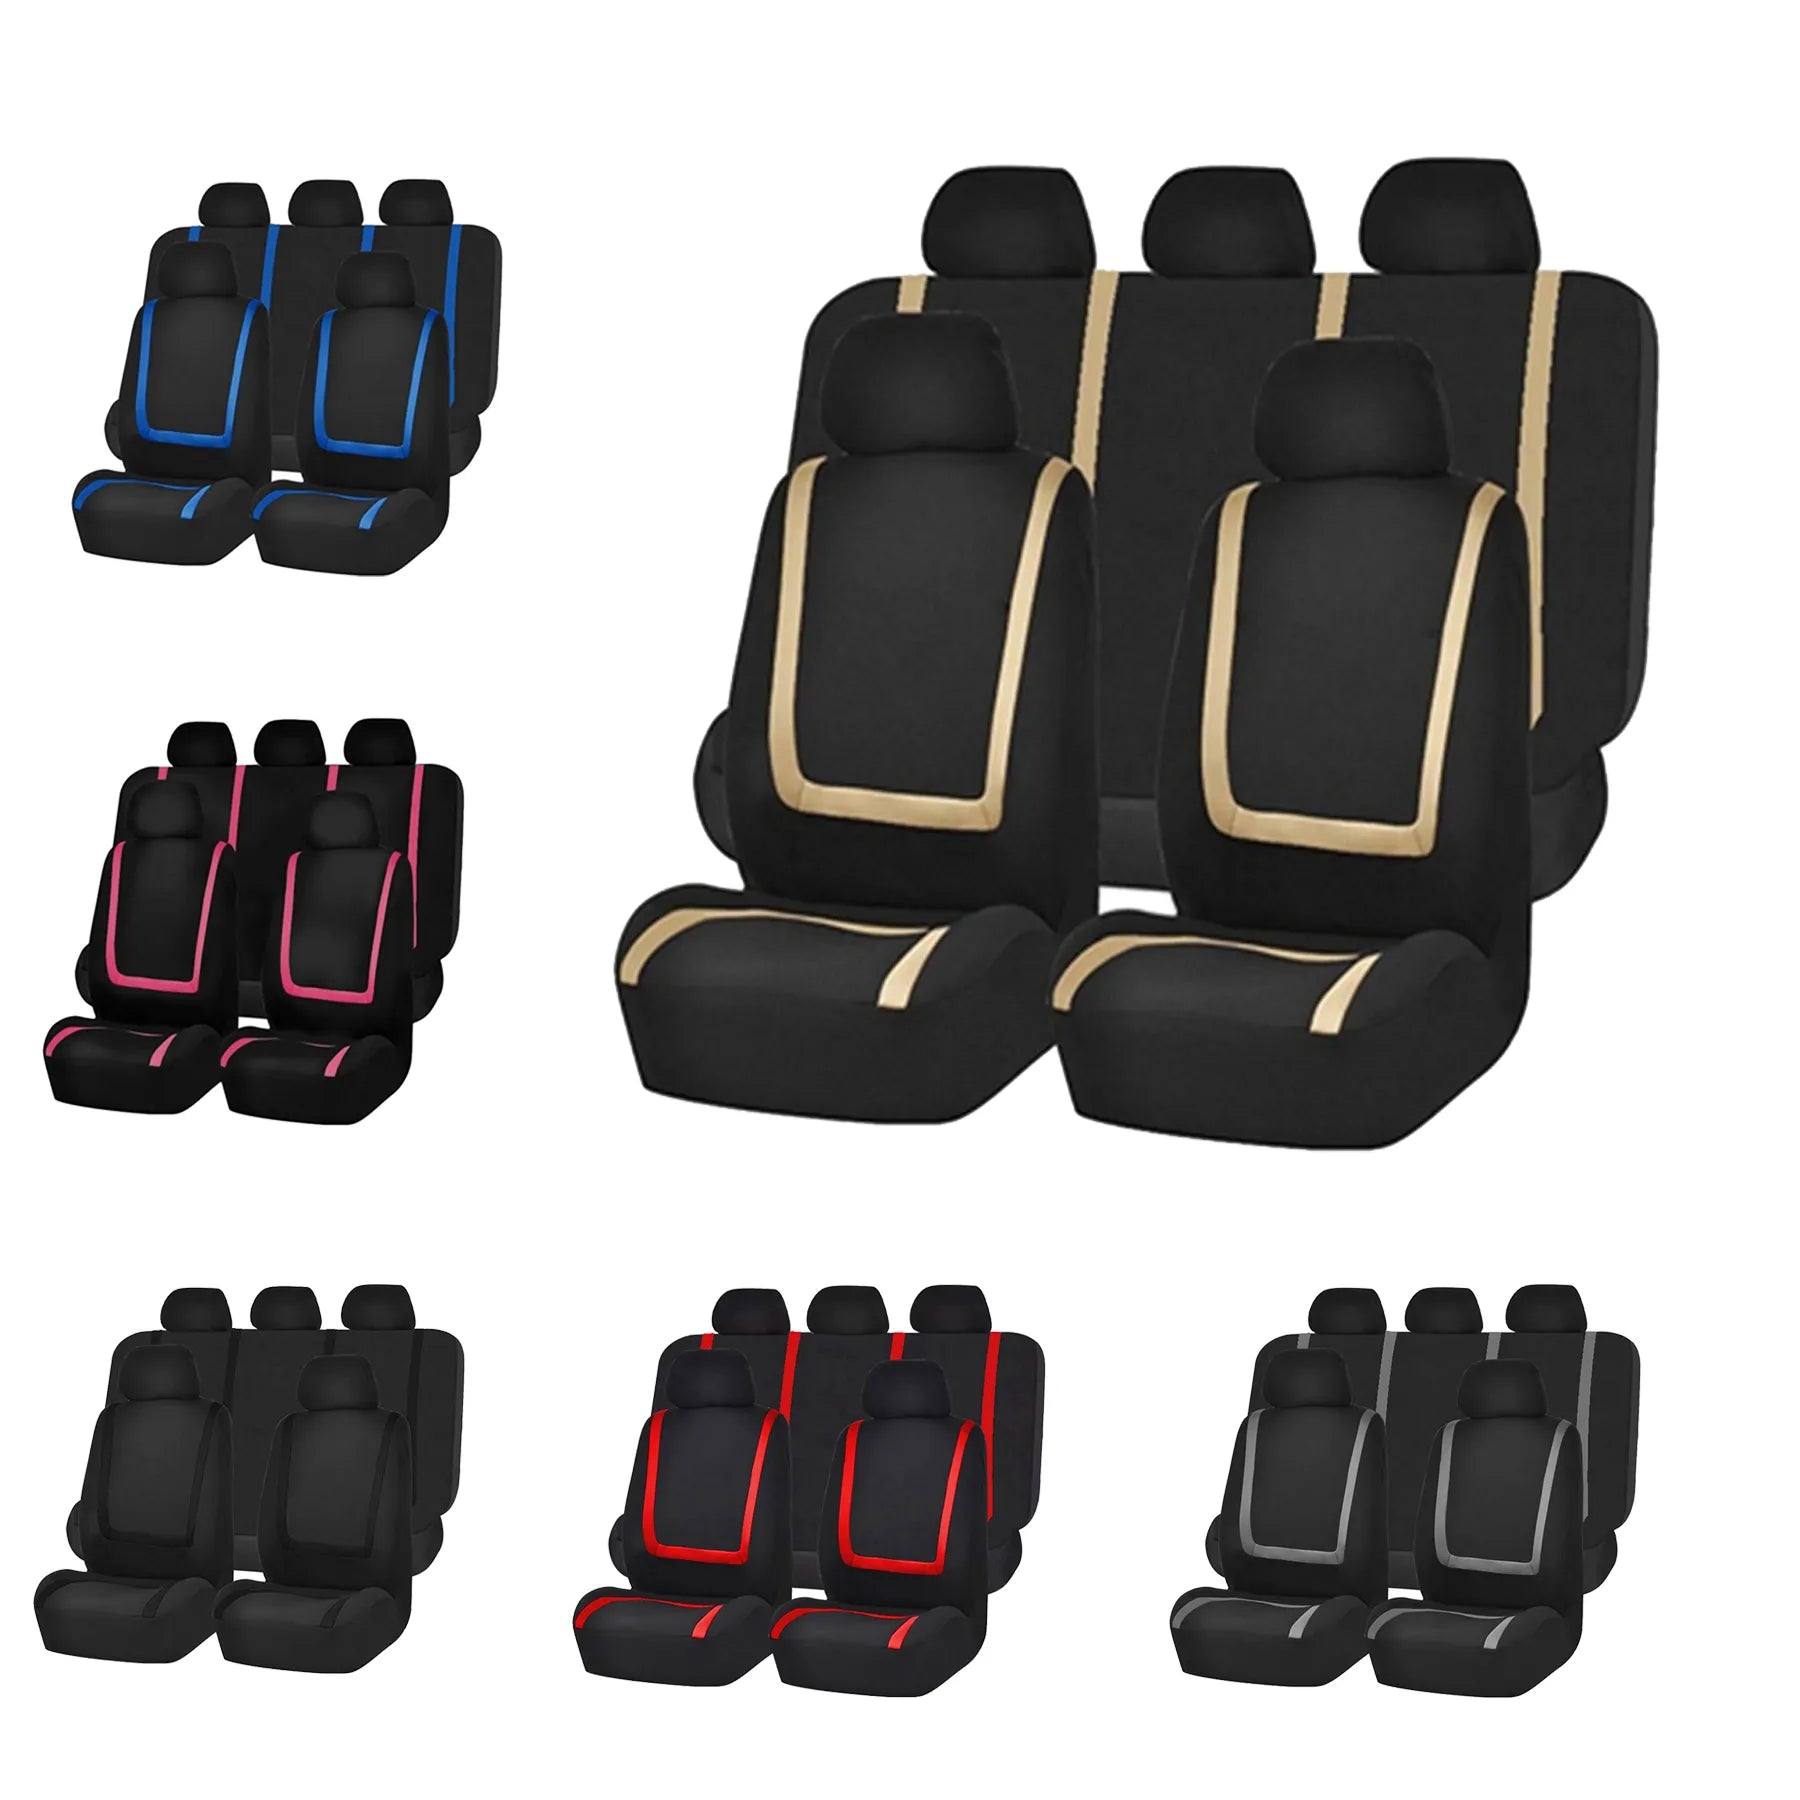 Kaufe 4 Teile/9 Teile/satz Auto Sitzbezüge Für Auto Lkw SUV Van Universal  Protektoren Sitzbezug 9 Farben